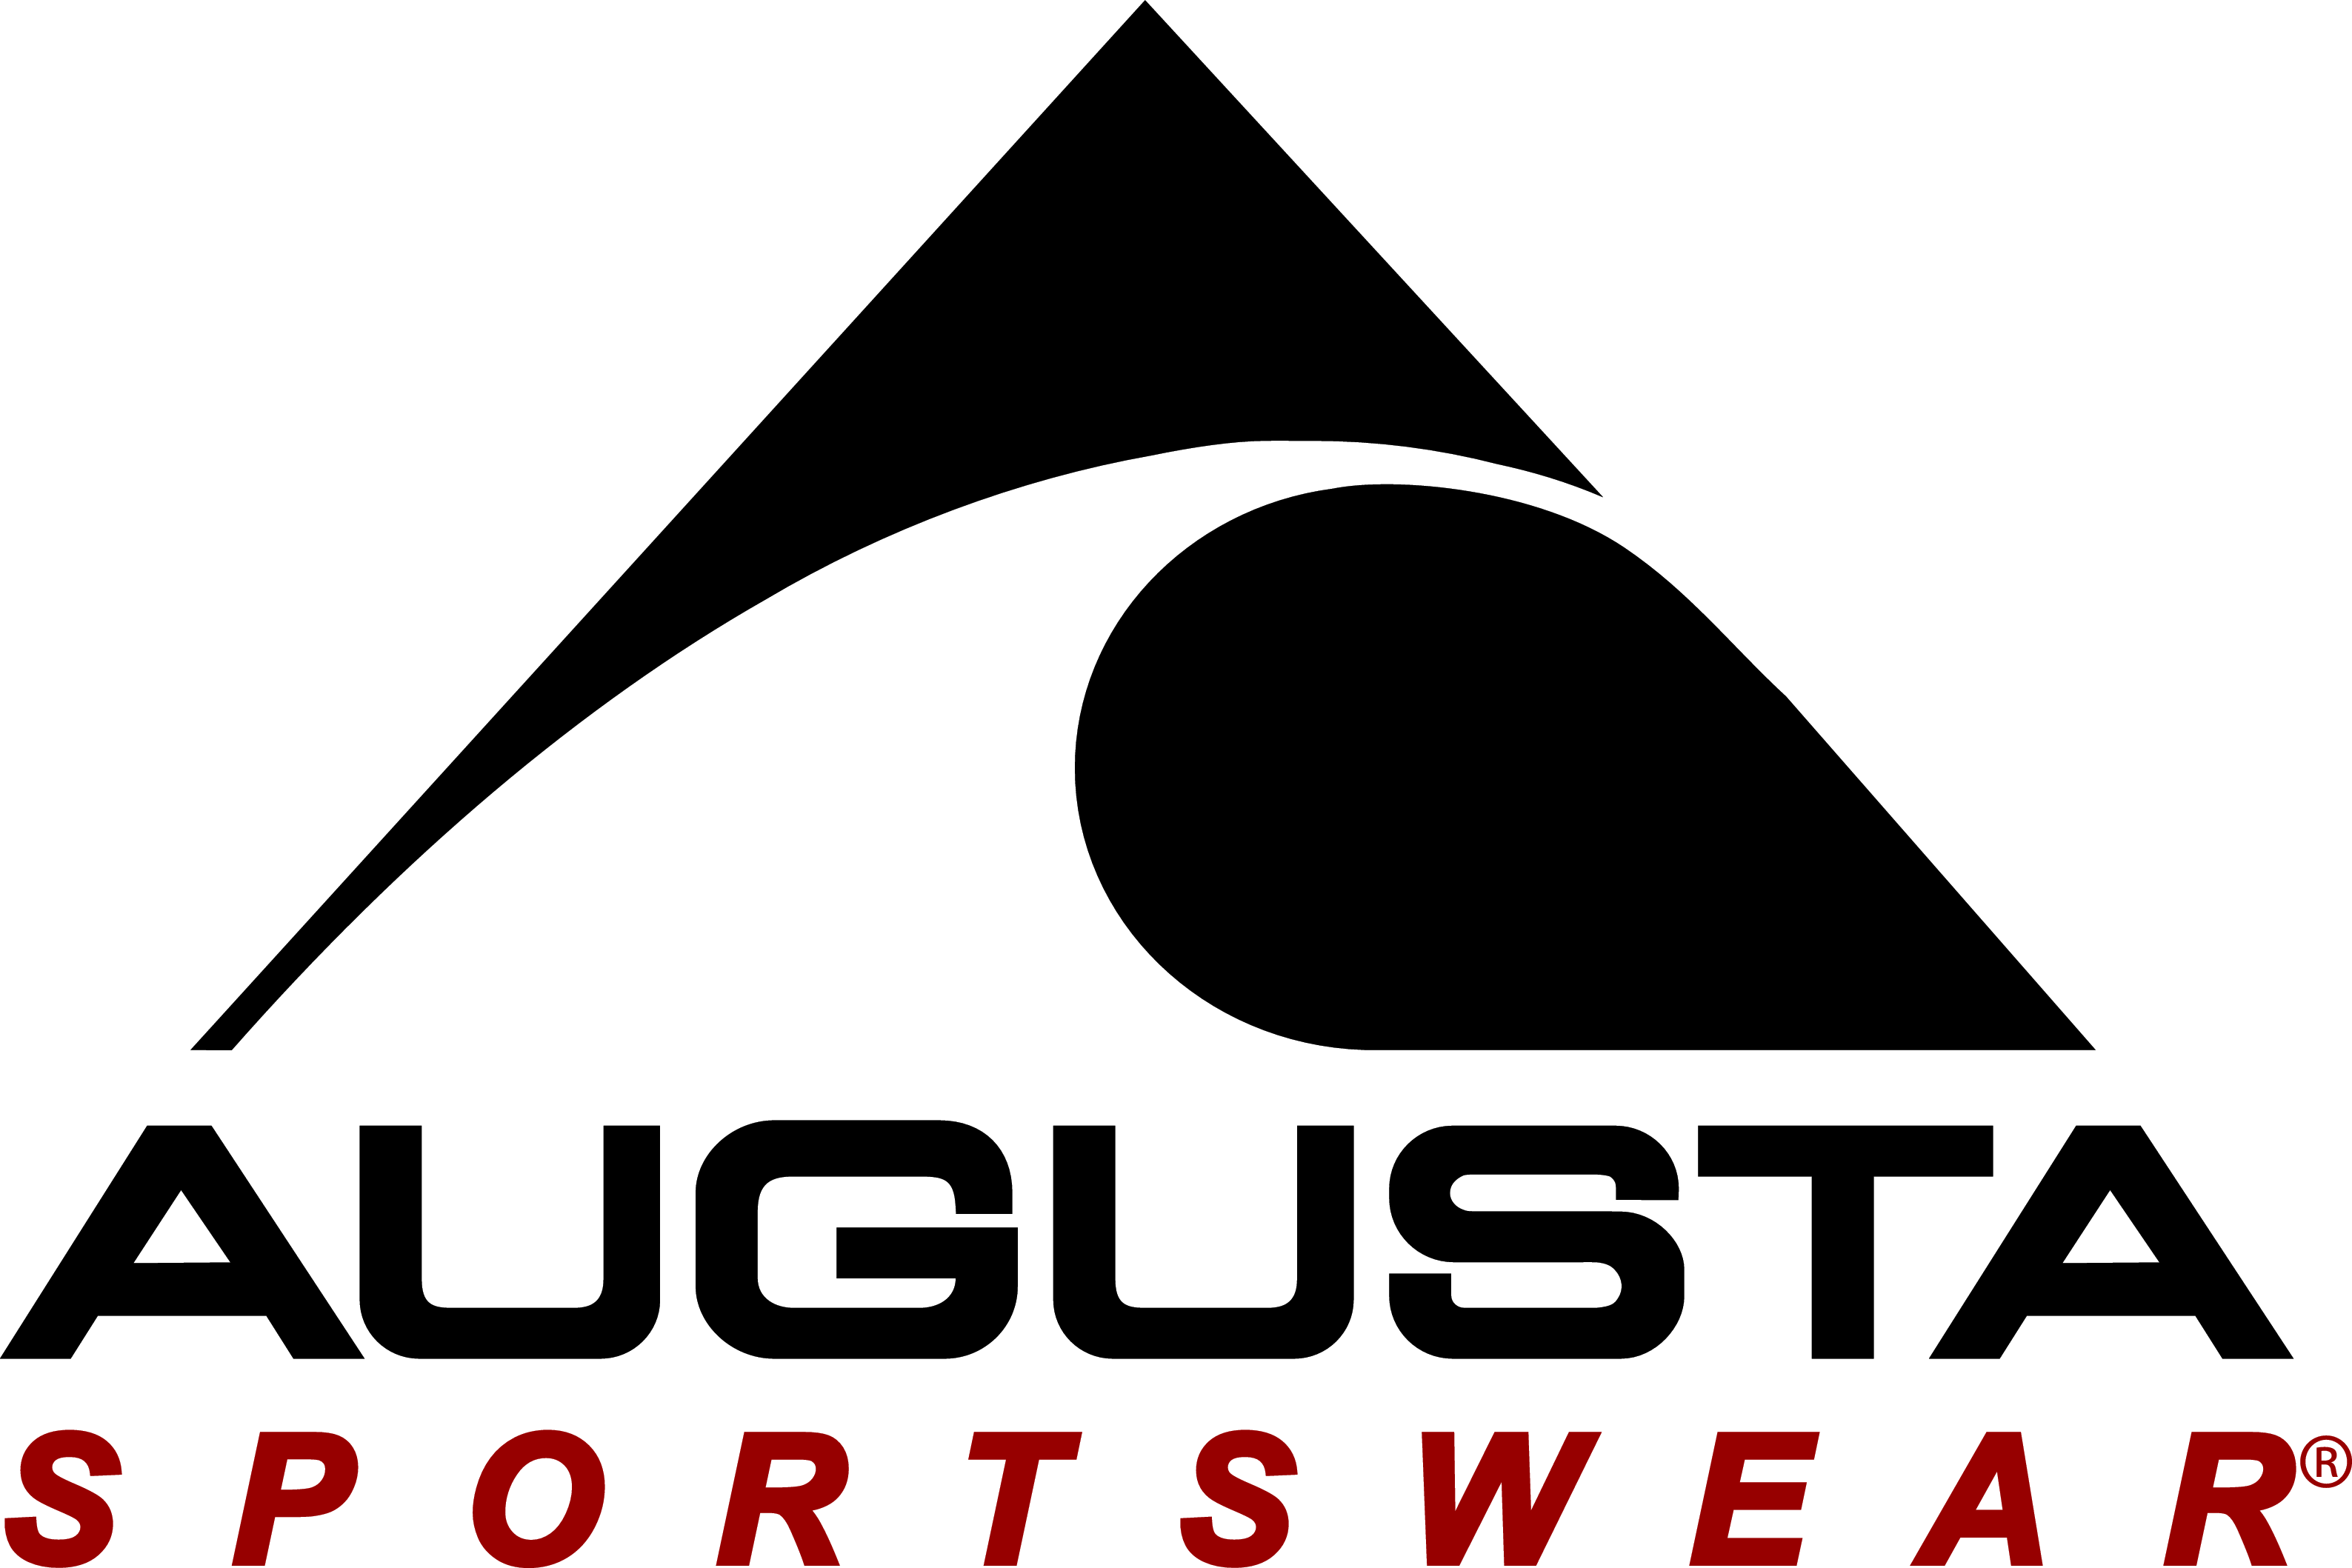 Augusta Sportswear Augusta Sportswear Holdings Inc 422-P 